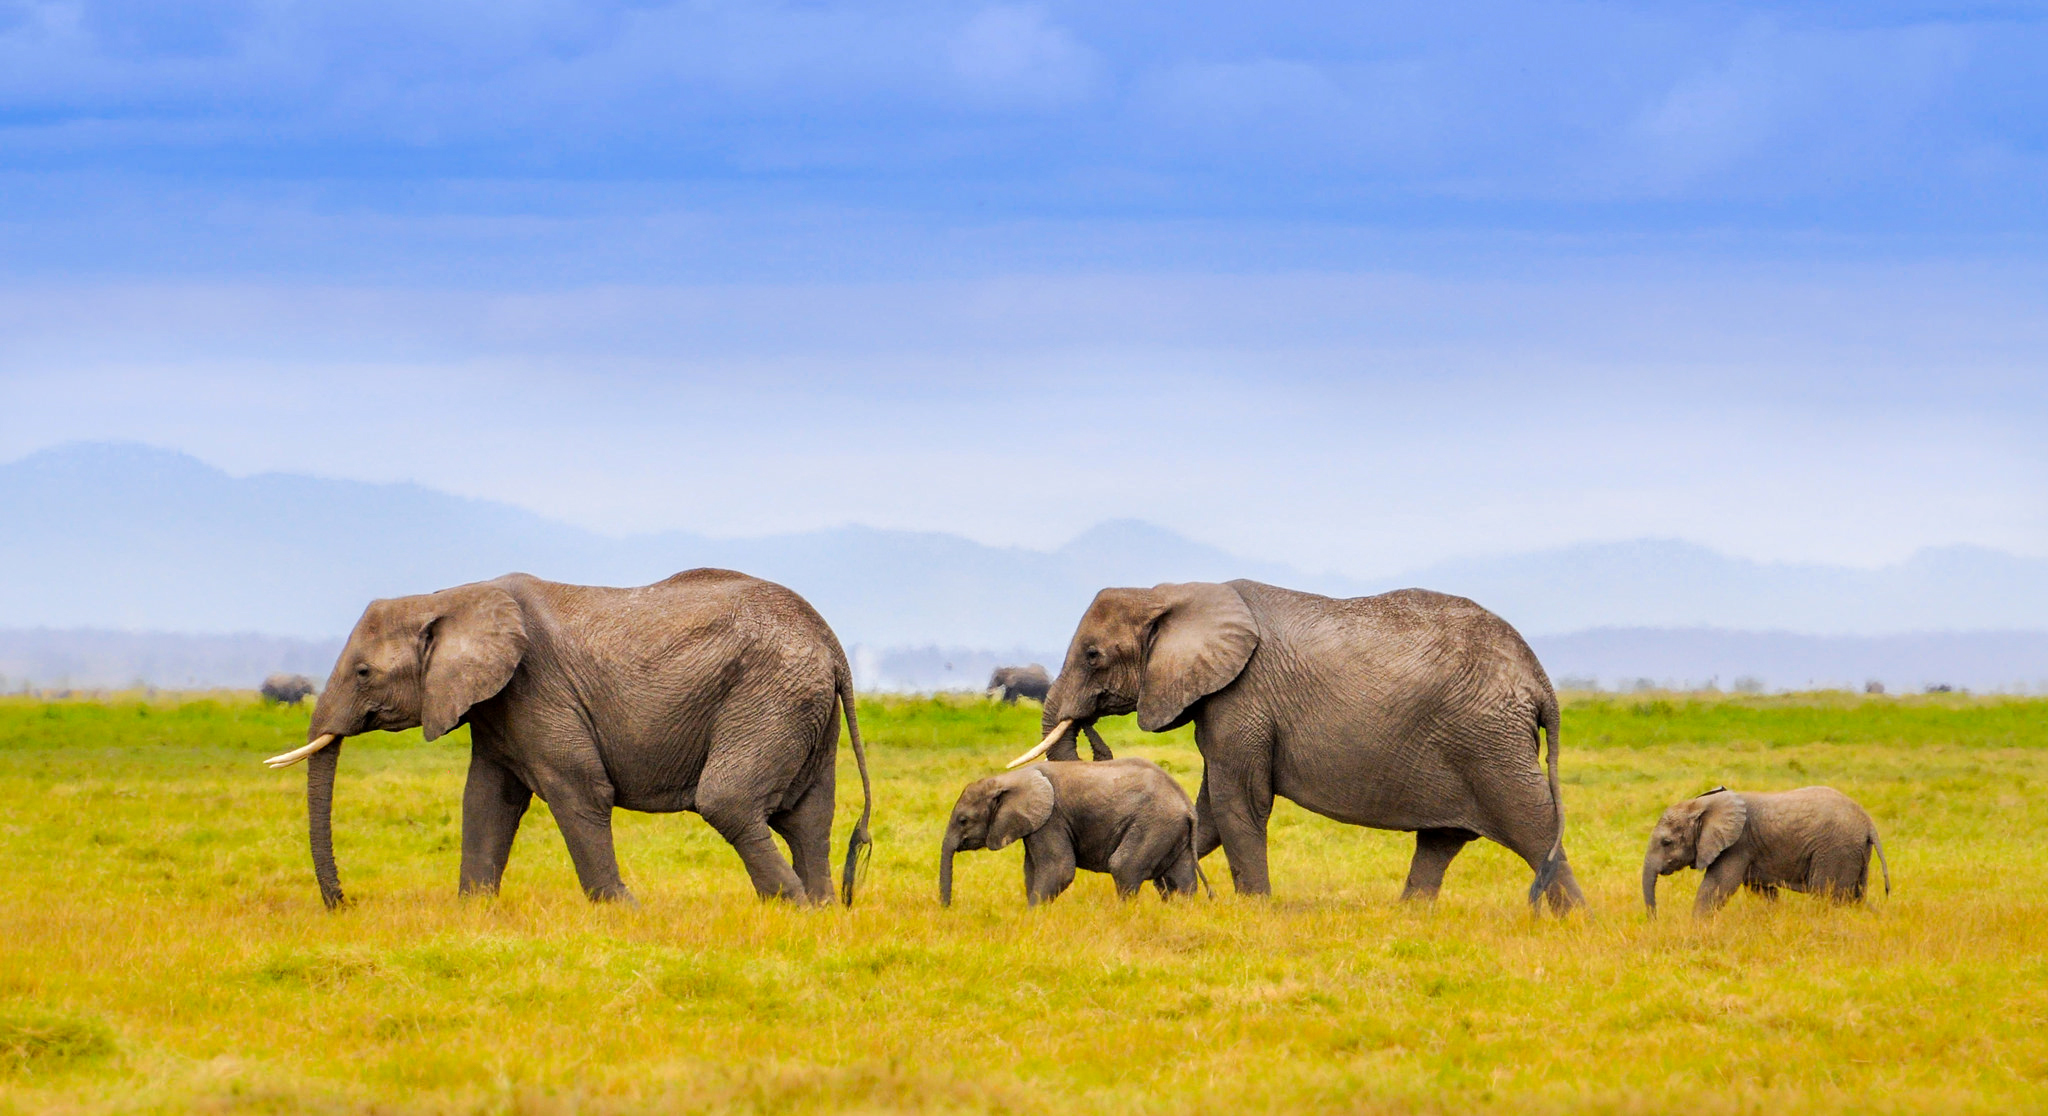 elephants, animal, african bush elephant, africa, grass, savannah FHD, 4K, UHD